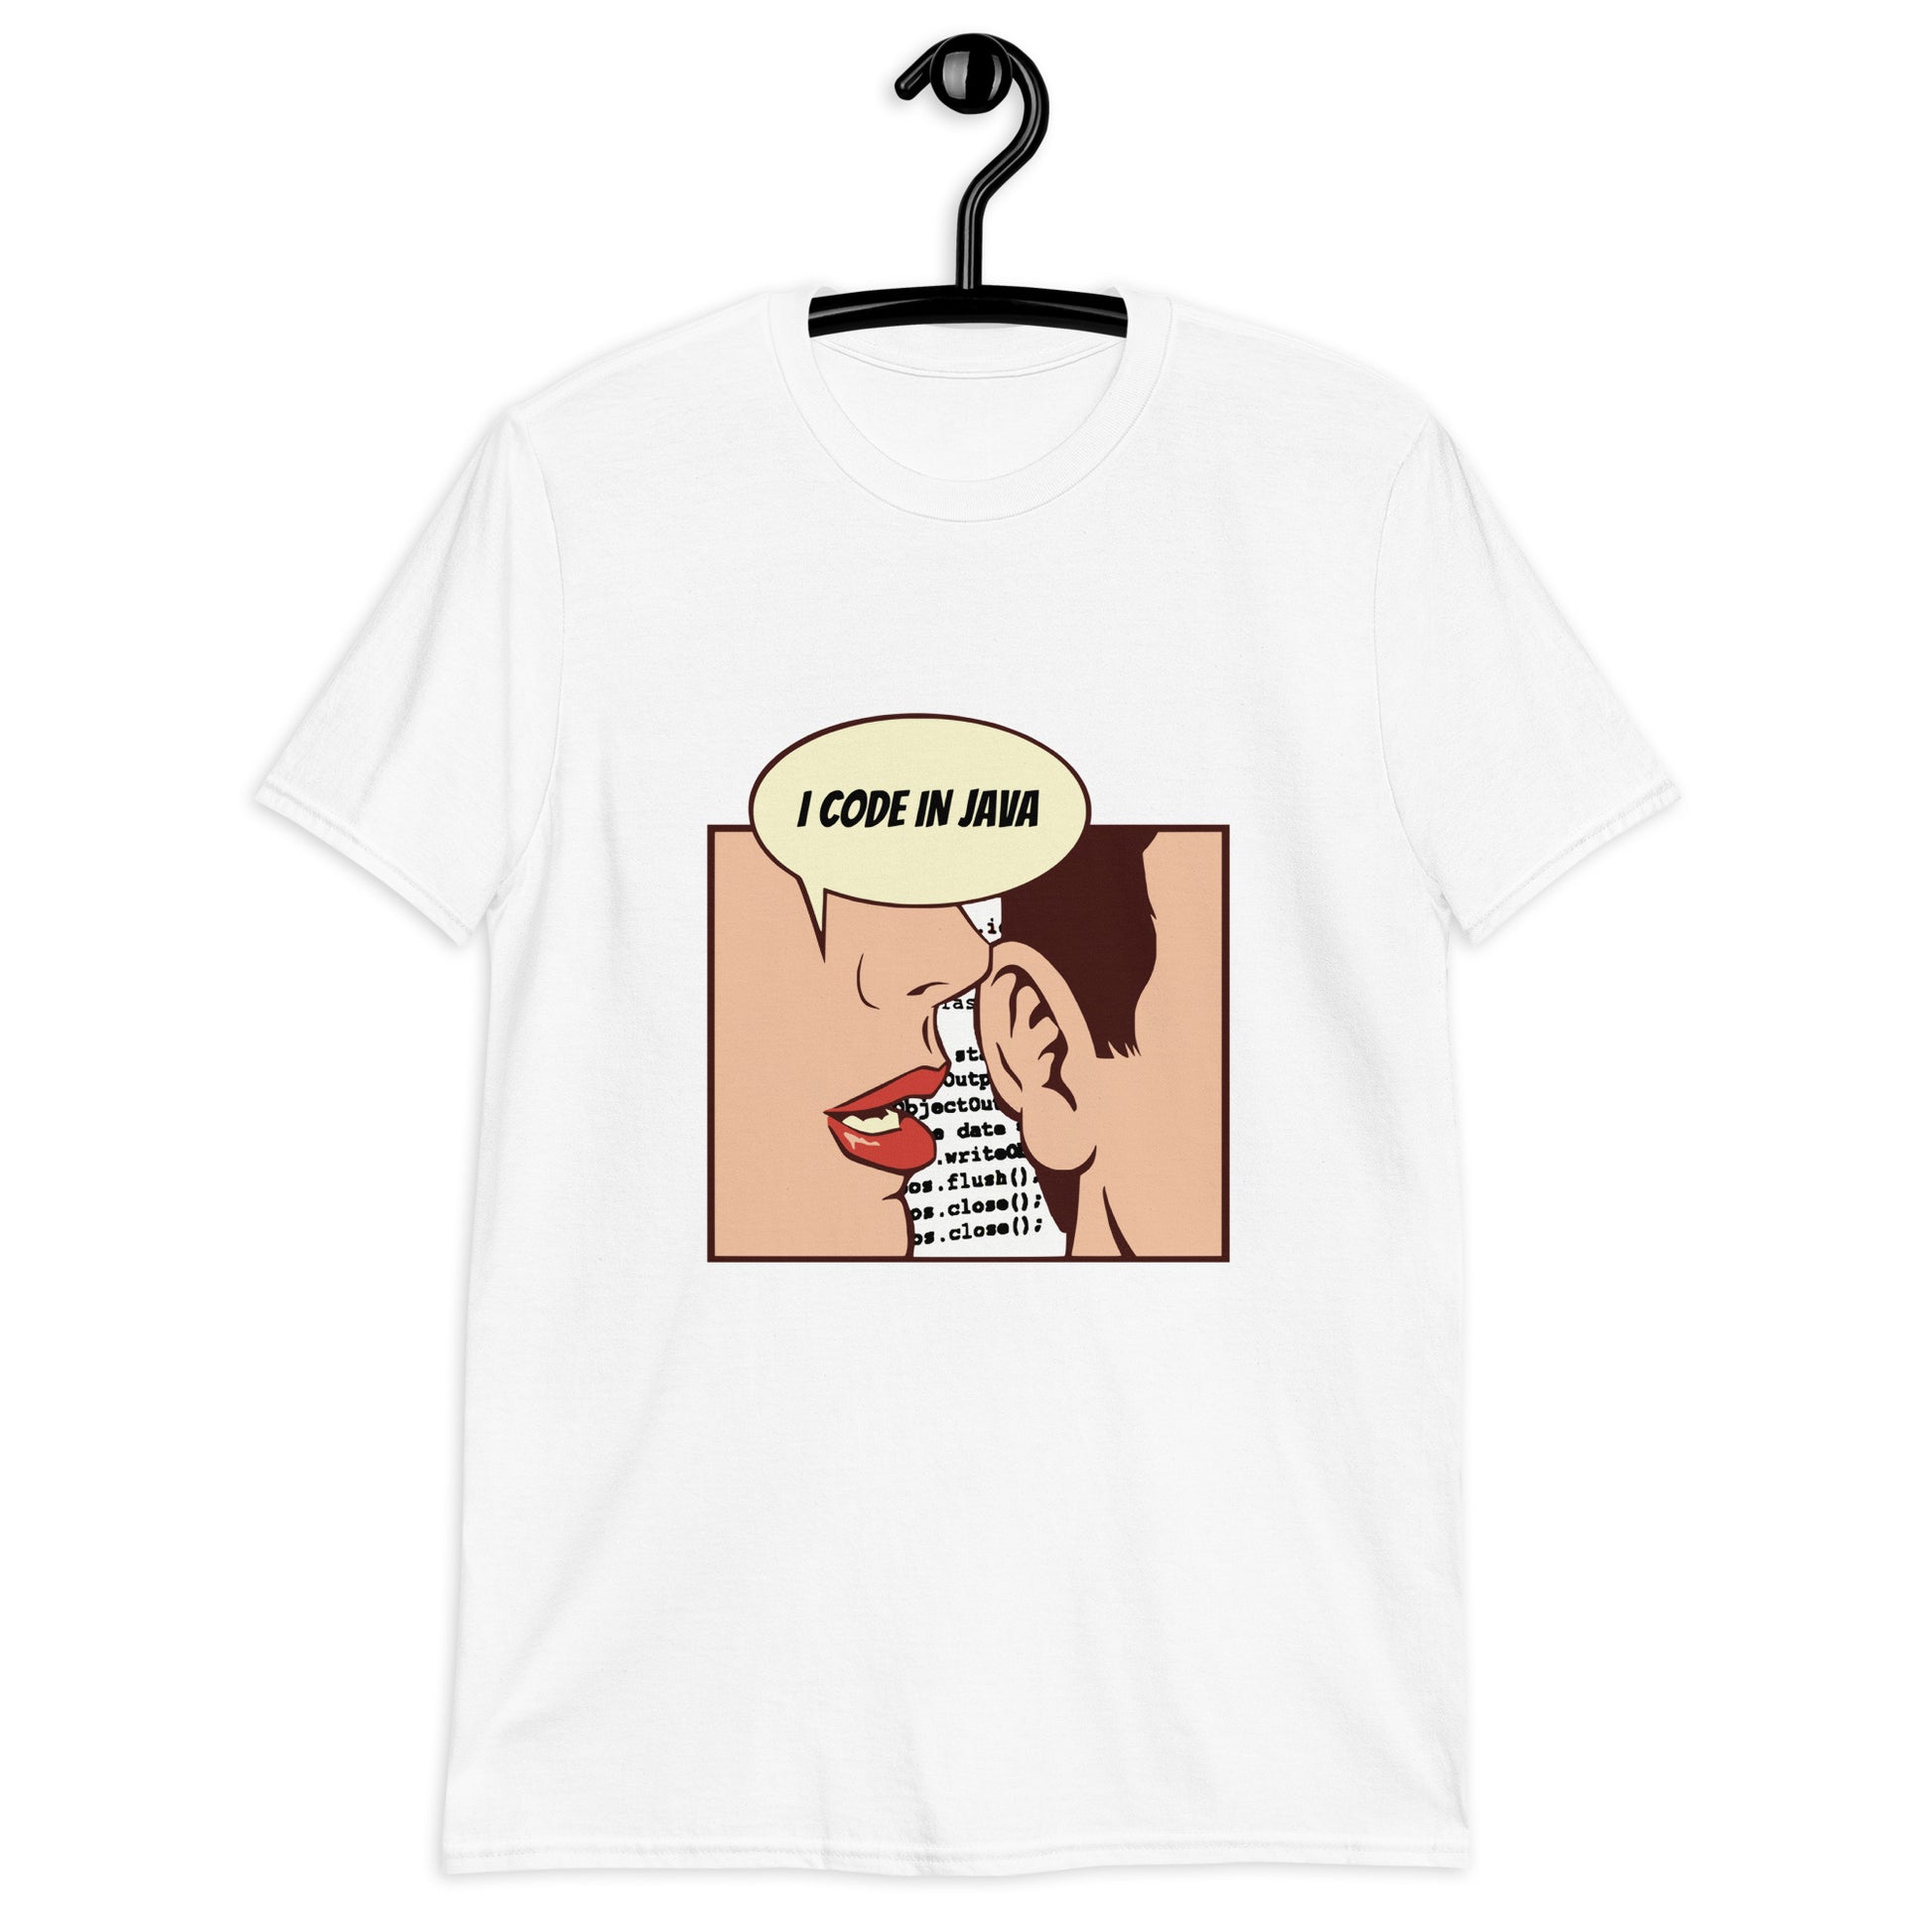 Java programming on a stylish t-shirt